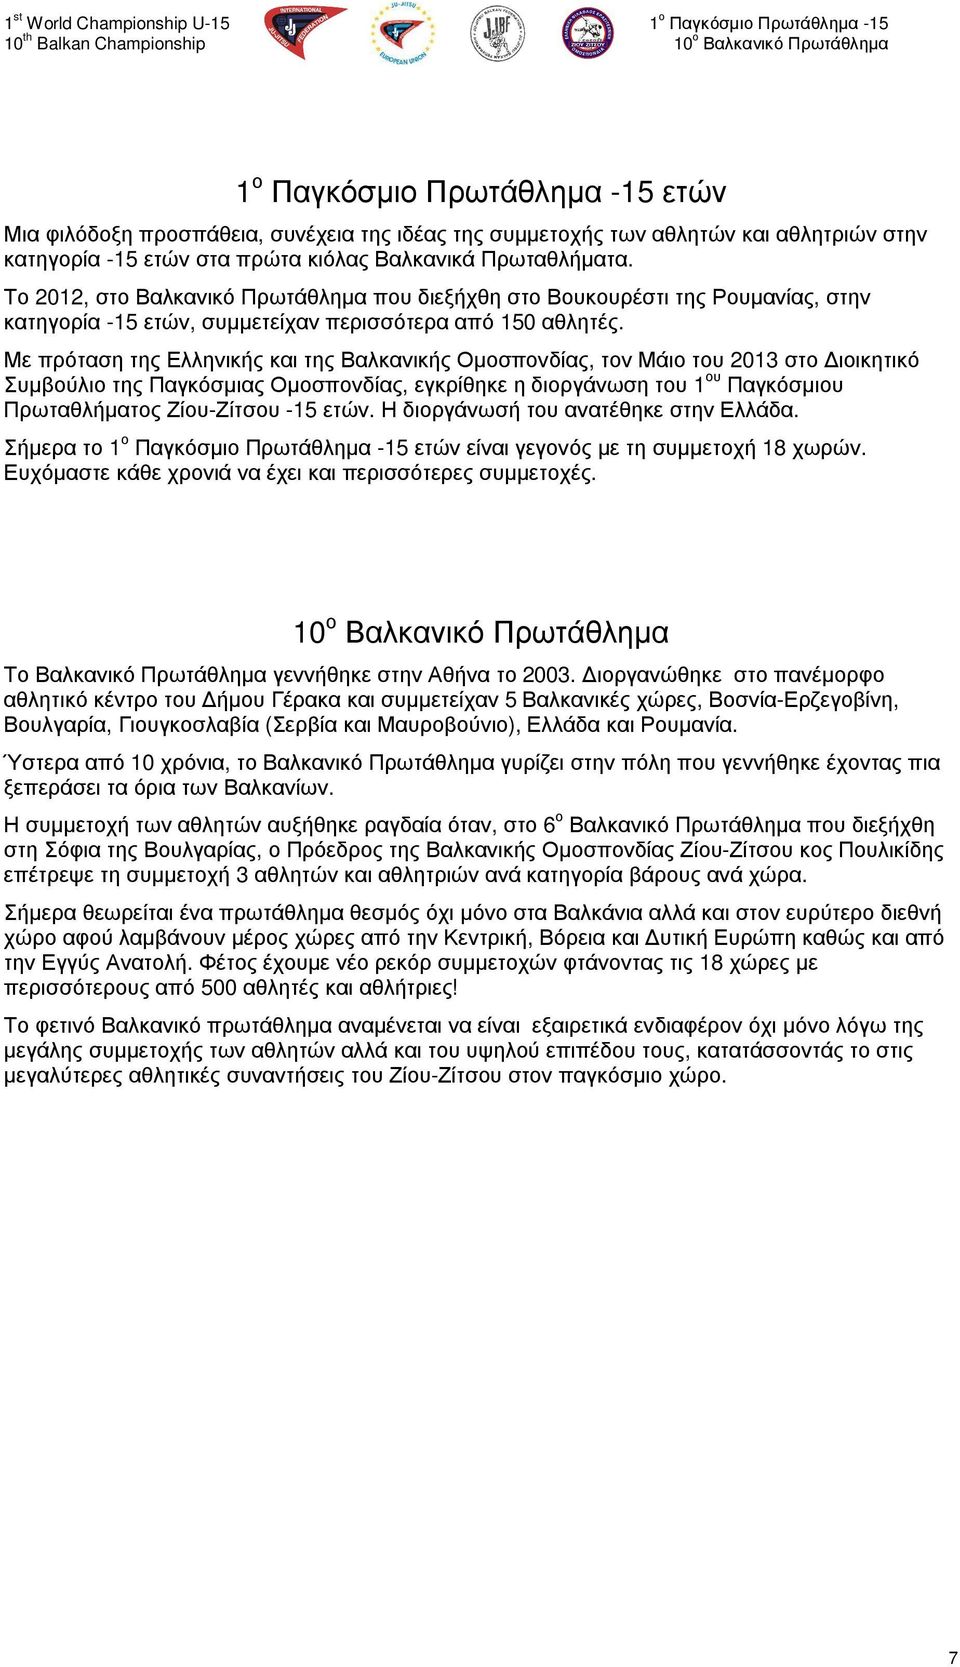 Με πρόταση της Ελληνικής και της Βαλκανικής Οµοσπονδίας, τον Μάιο του 2013 στο ιοικητικό Συµβούλιο της Παγκόσµιας Οµοσπονδίας, εγκρίθηκε η διοργάνωση του 1 ου Παγκόσµιου Πρωταθλήµατος Ζίου-Ζίτσου -15